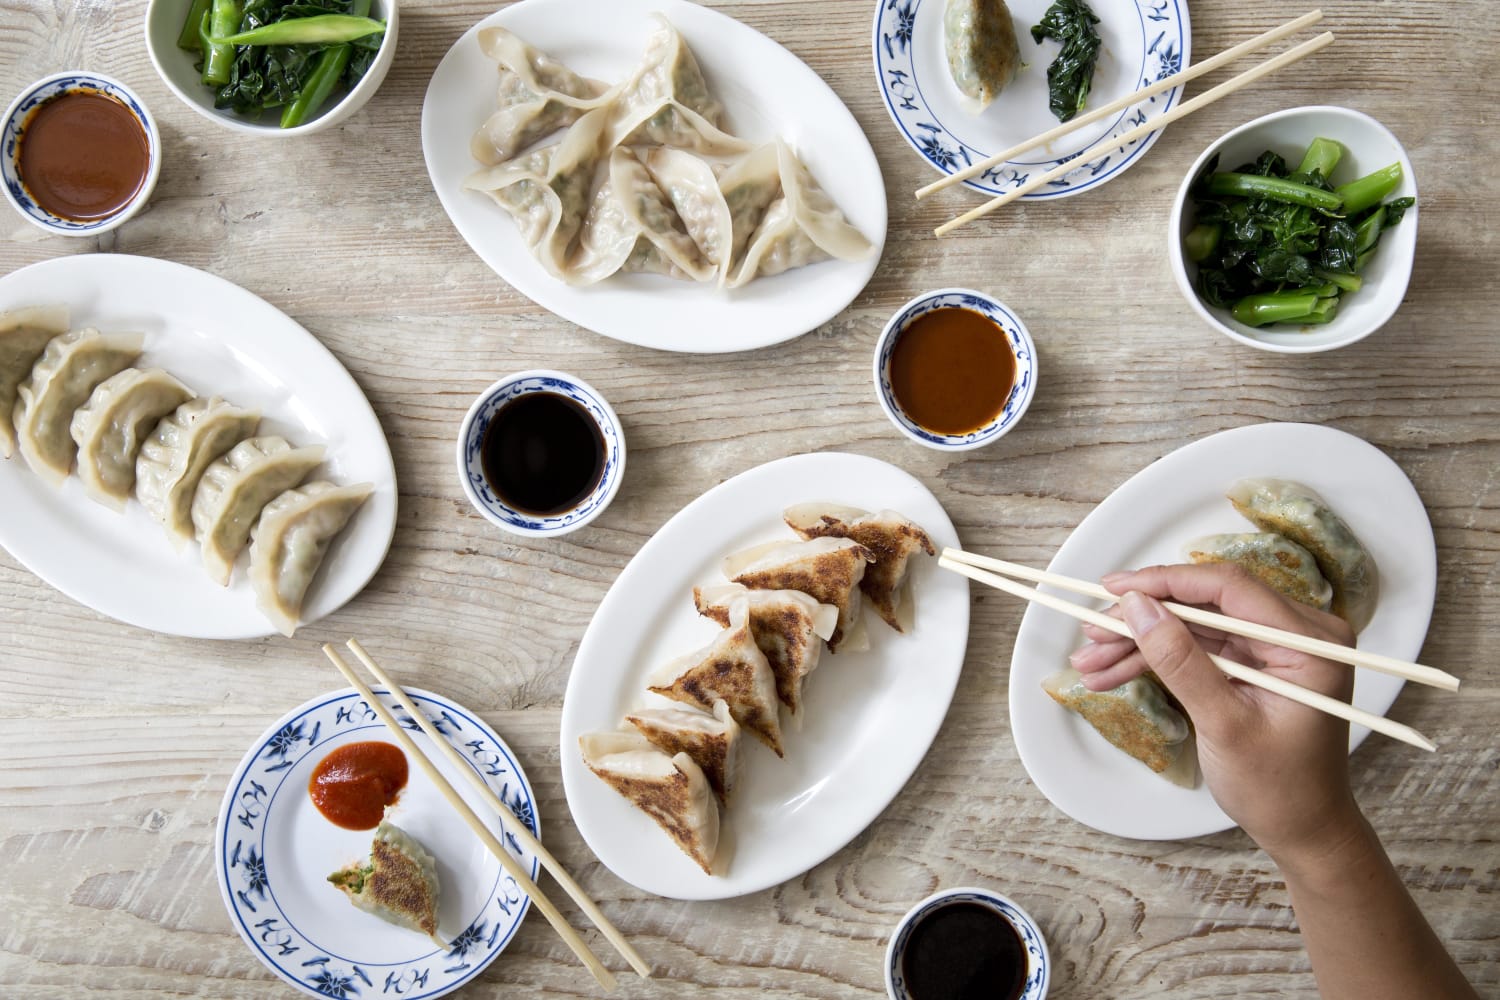 From Dumplings to Bubble Tea, Asian Street Food Goes Artisanal